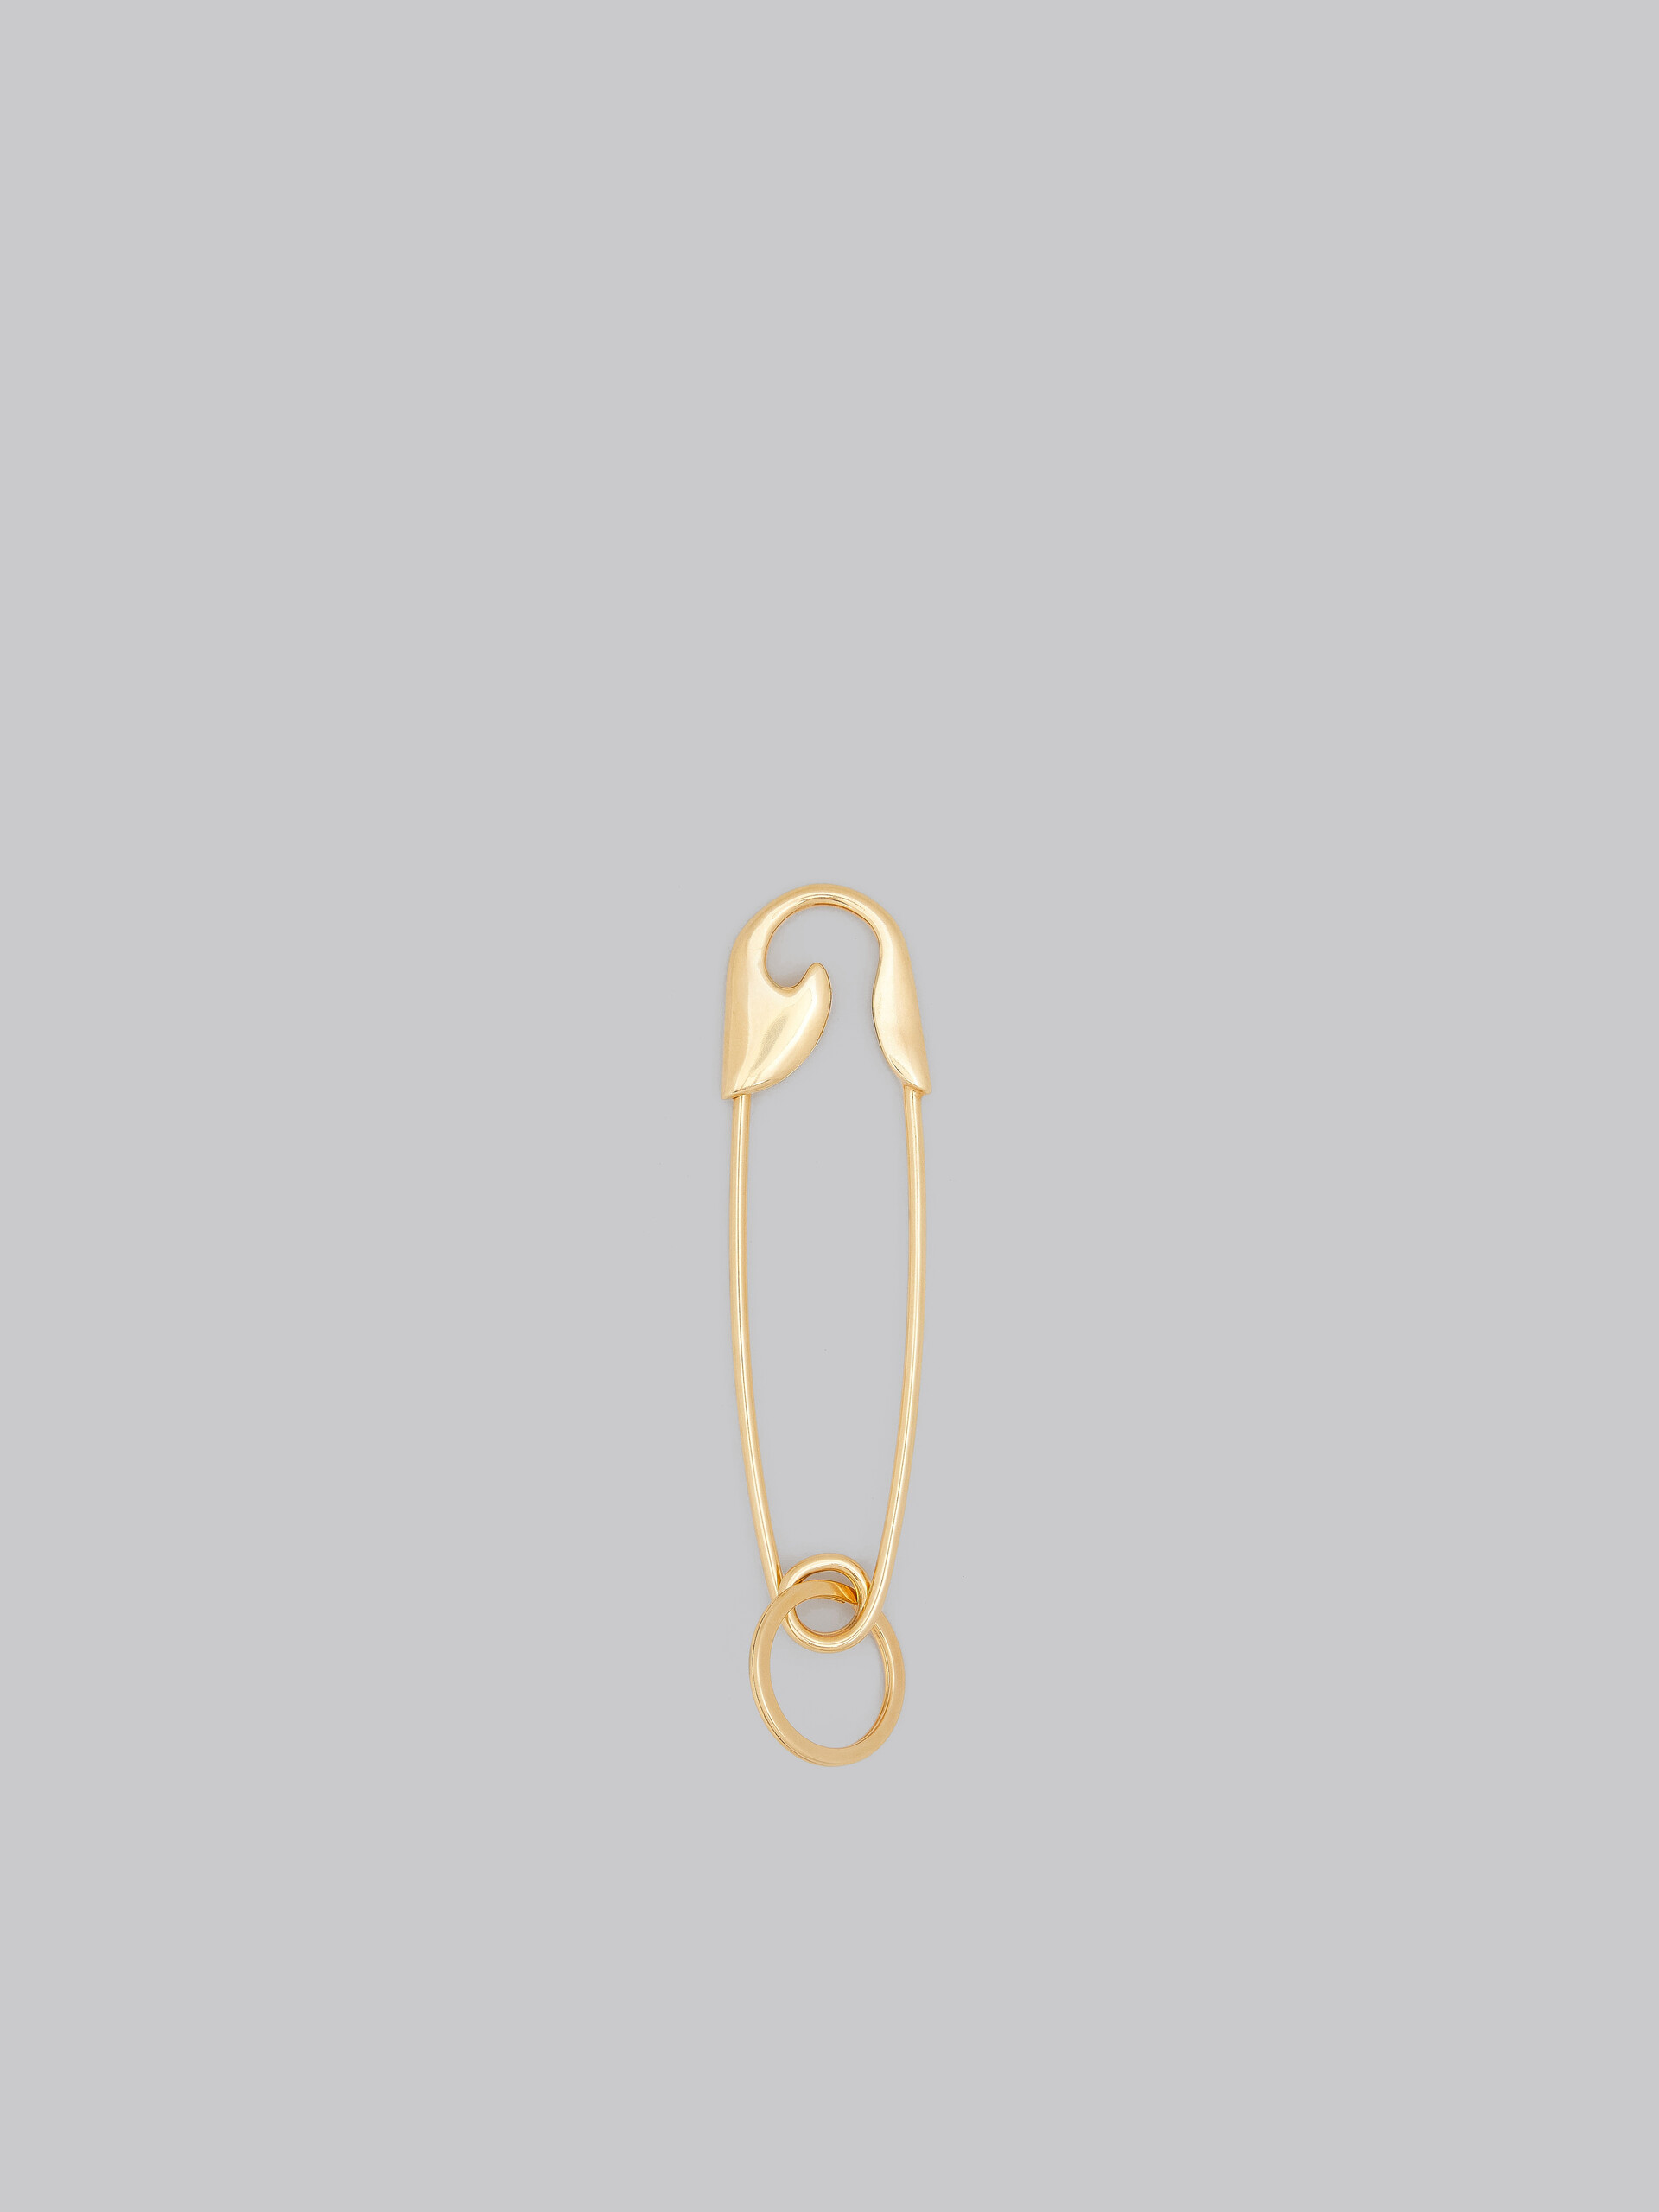 Llavero dorado con forma de imperdible - Joyas - Image 2